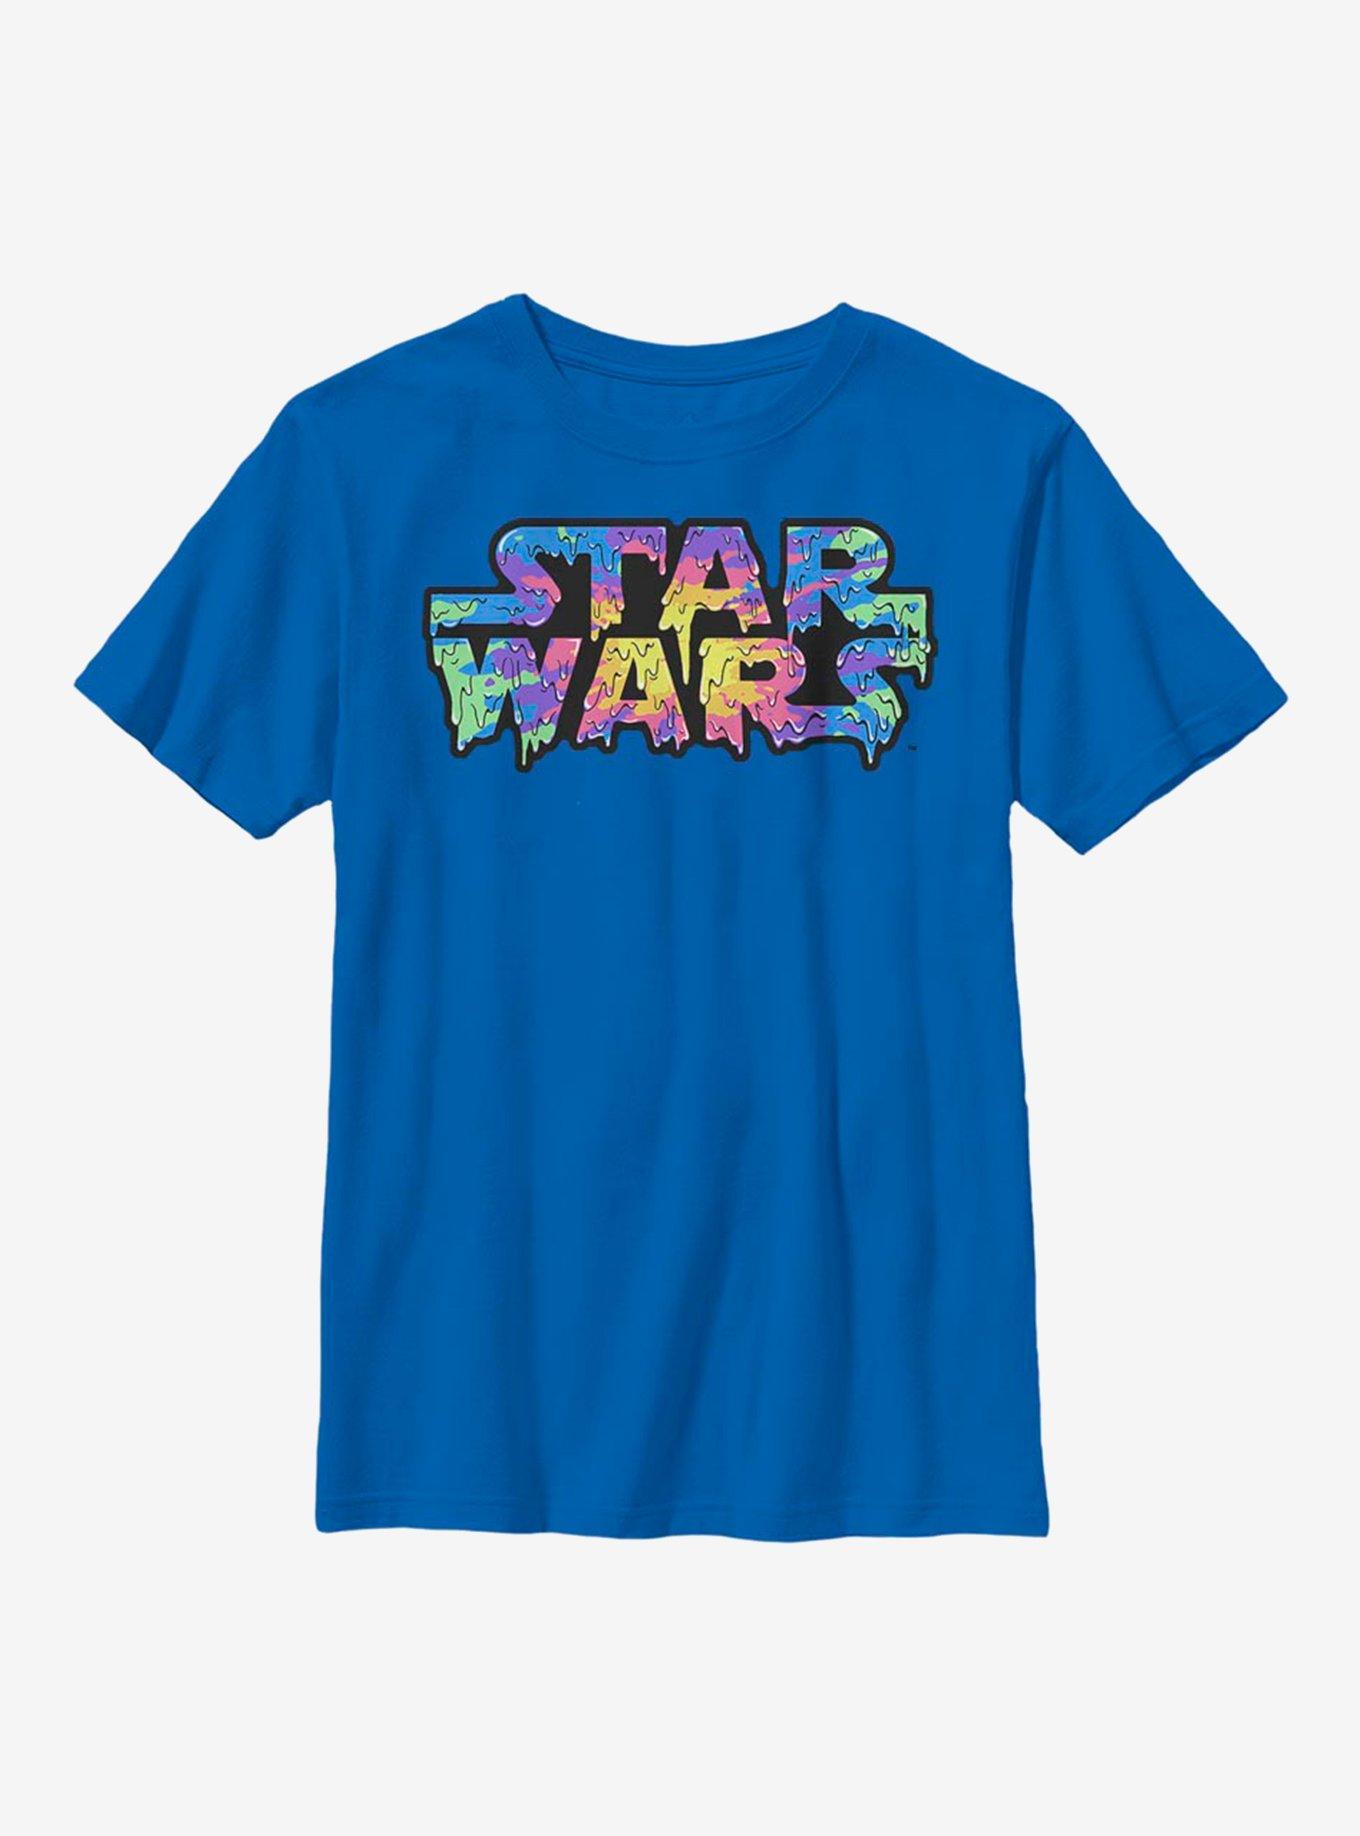 Star Wars Rainbow Drip Logo Youth T-Shirt, ROYAL, hi-res